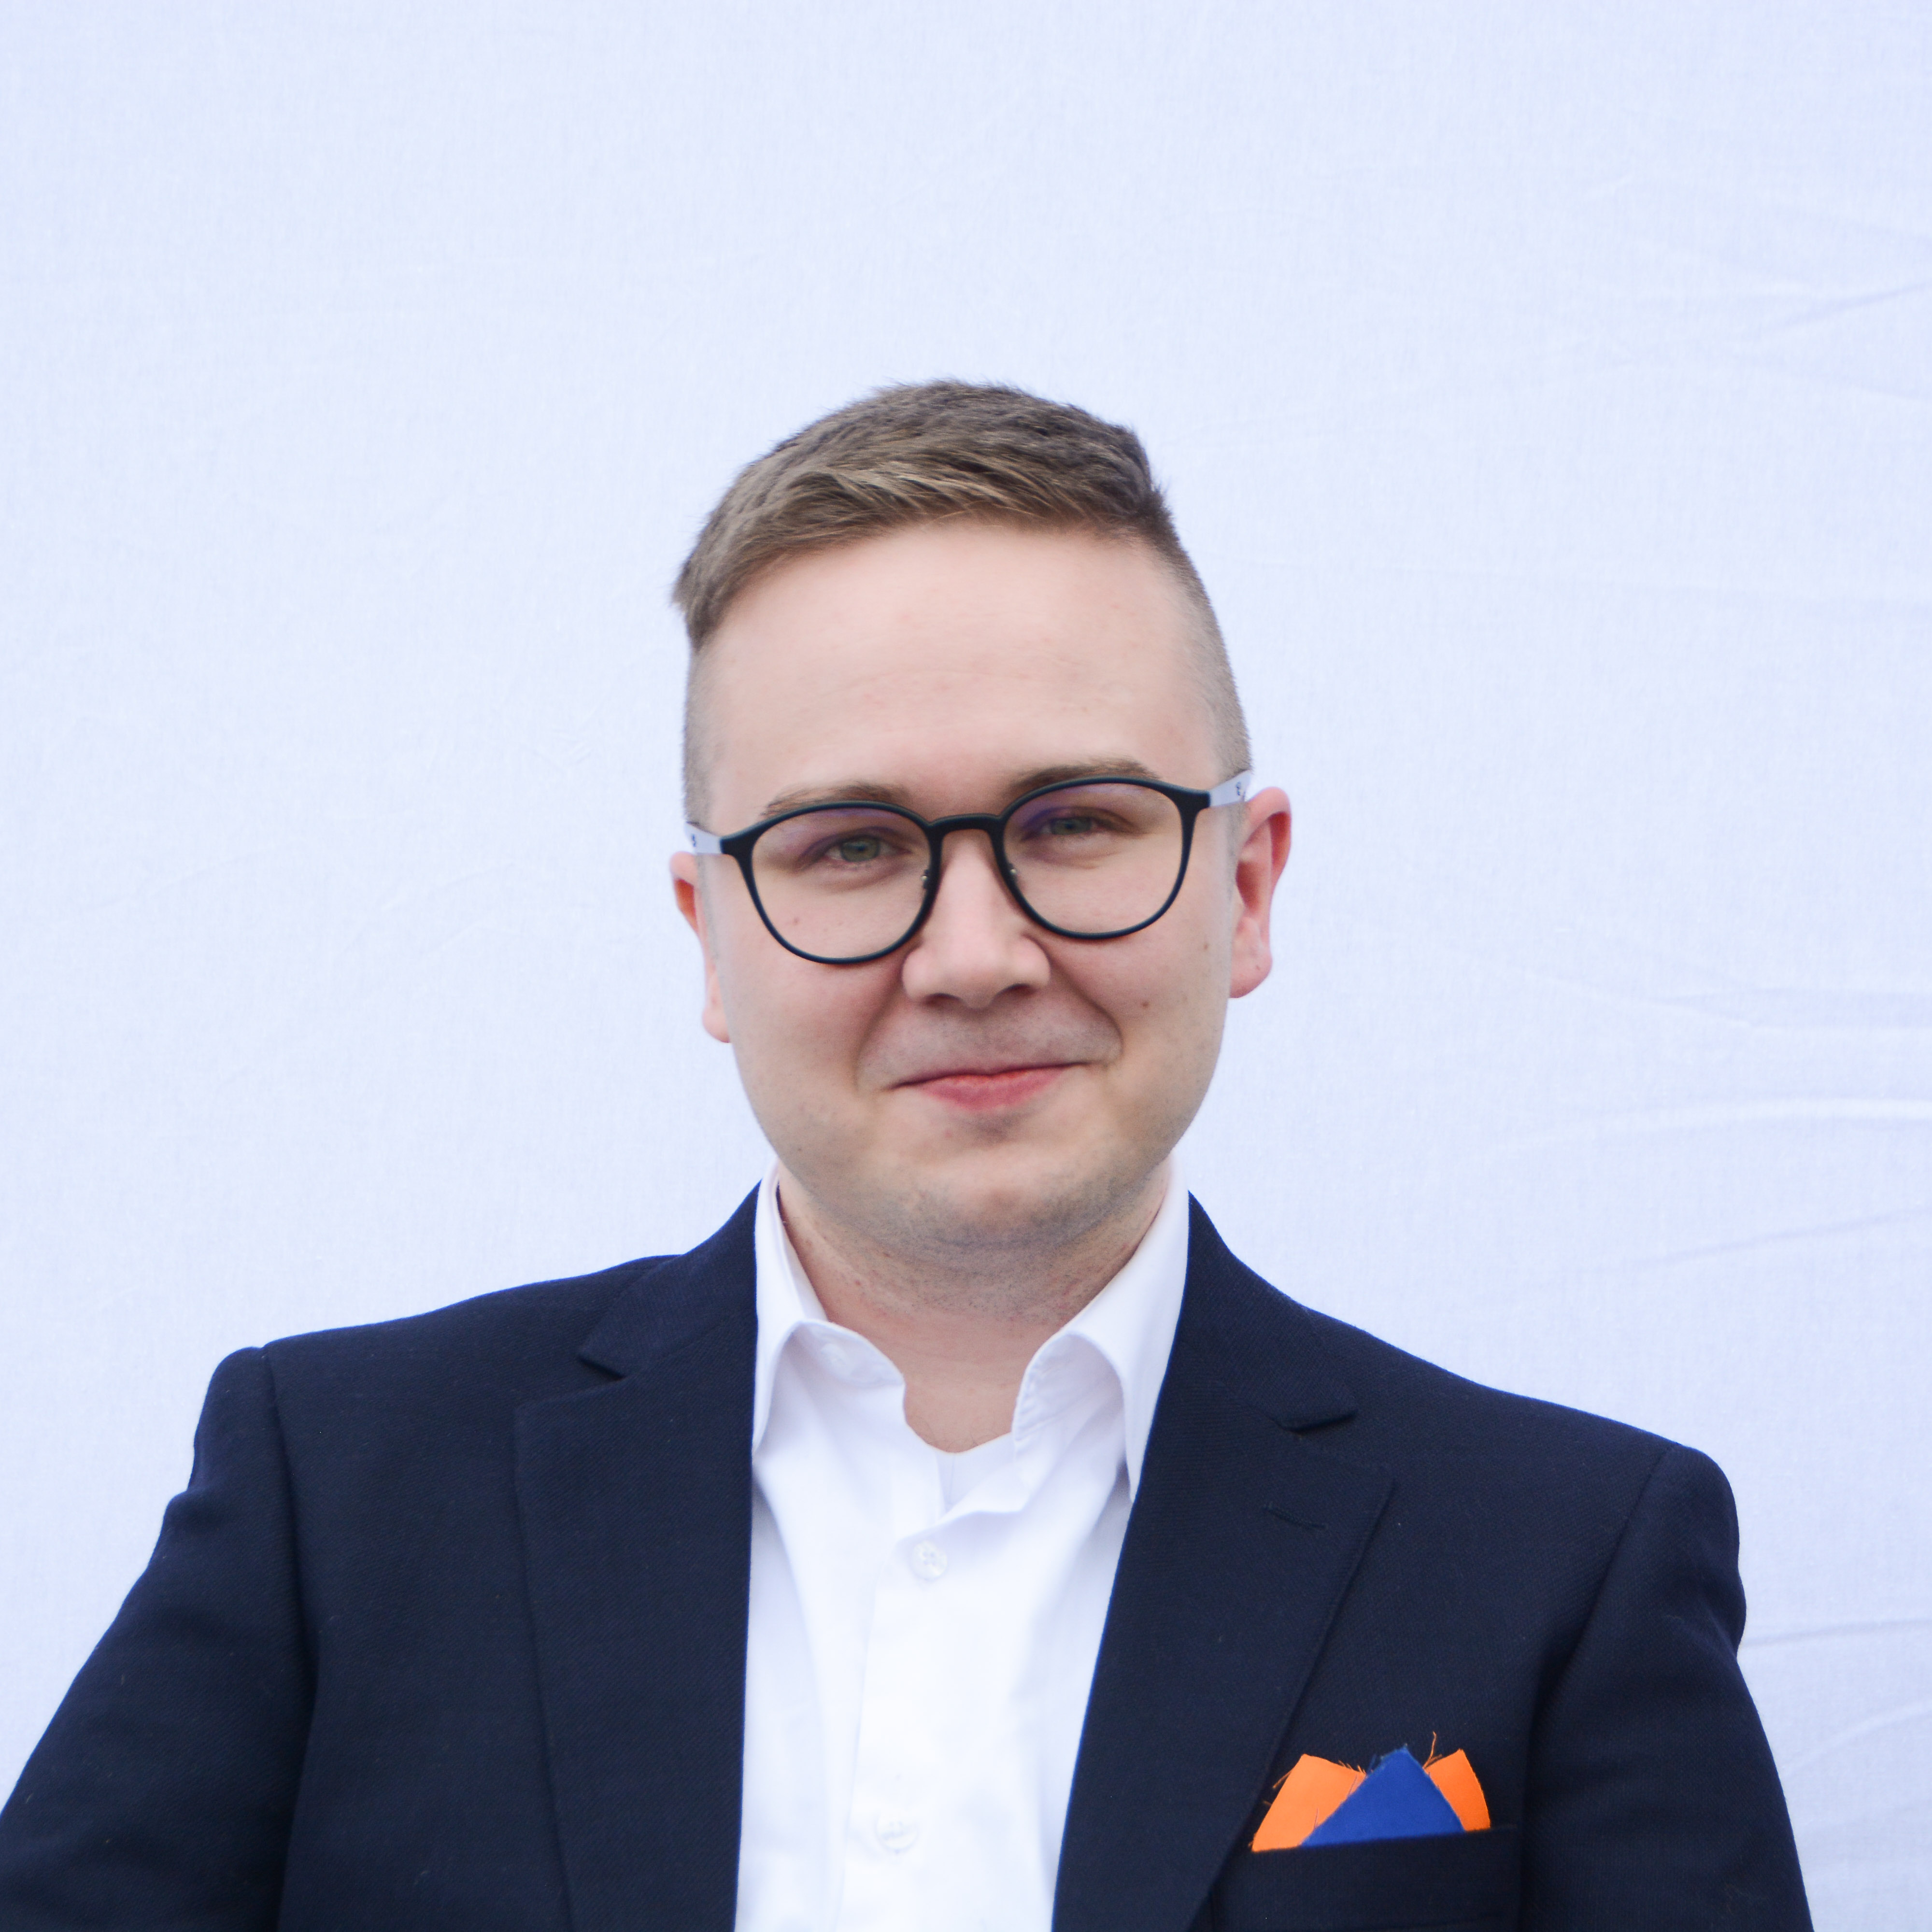 Janne Väyrynen, Design Engineer at Fluidit Ltd